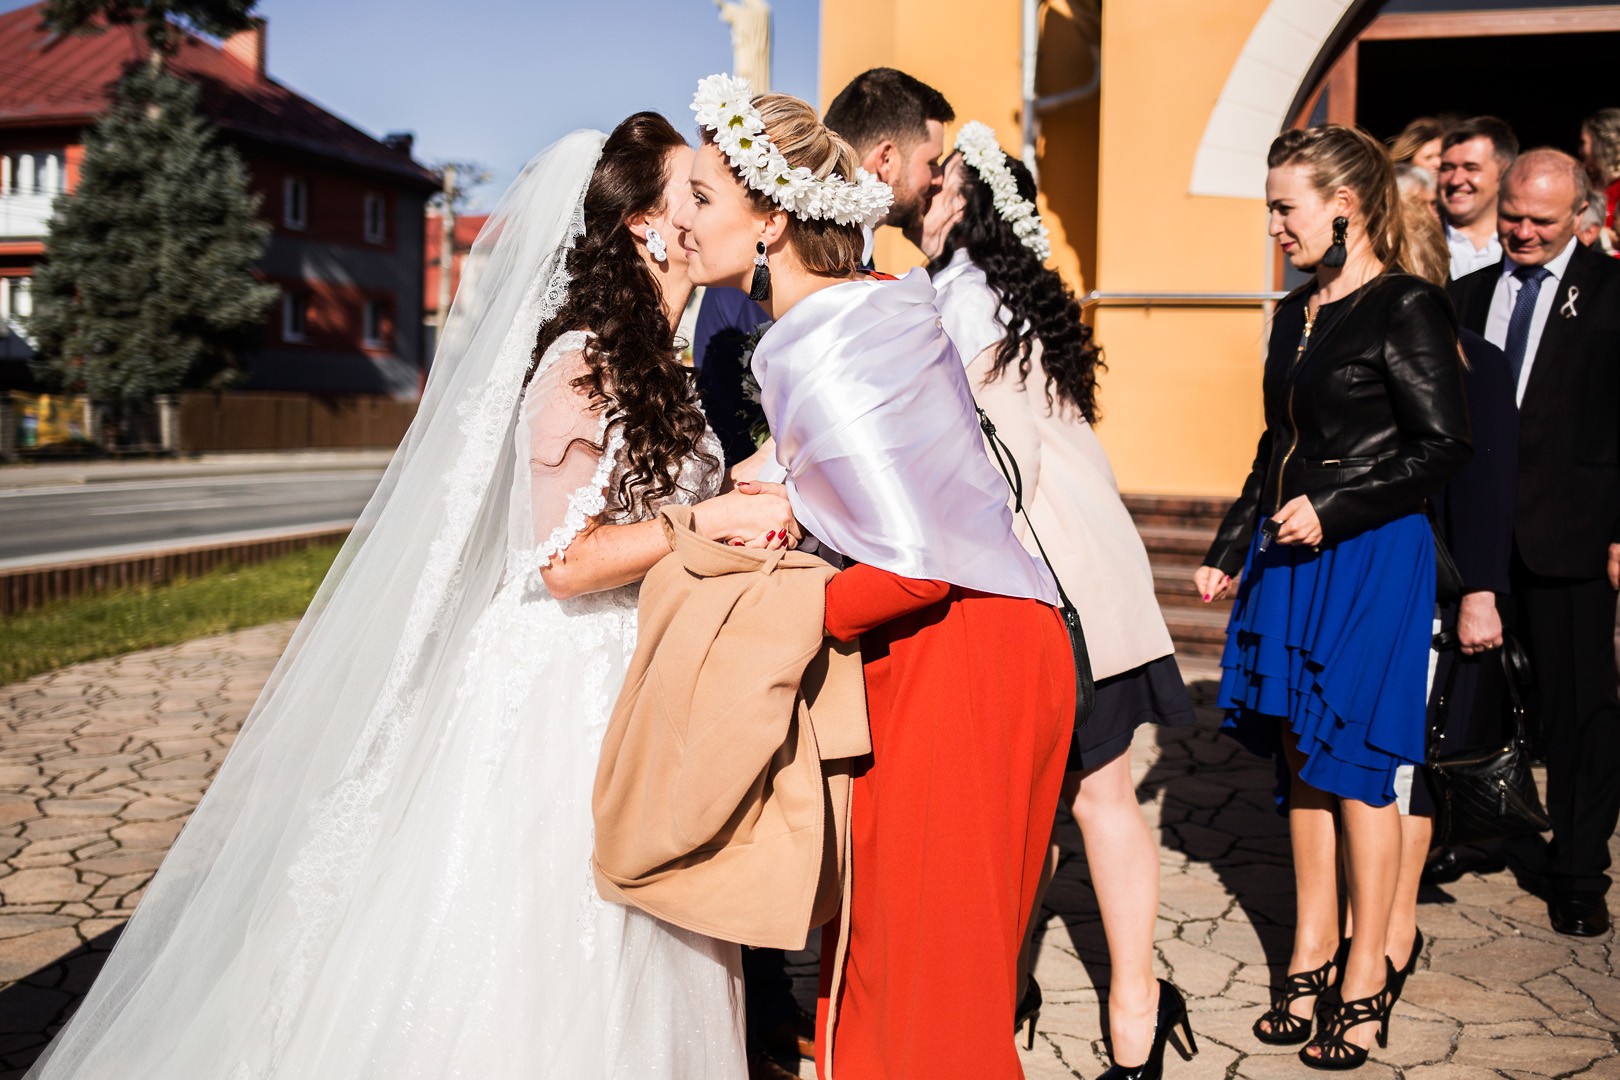 Wedding photos Zdenka and Marko - 0138.jpg